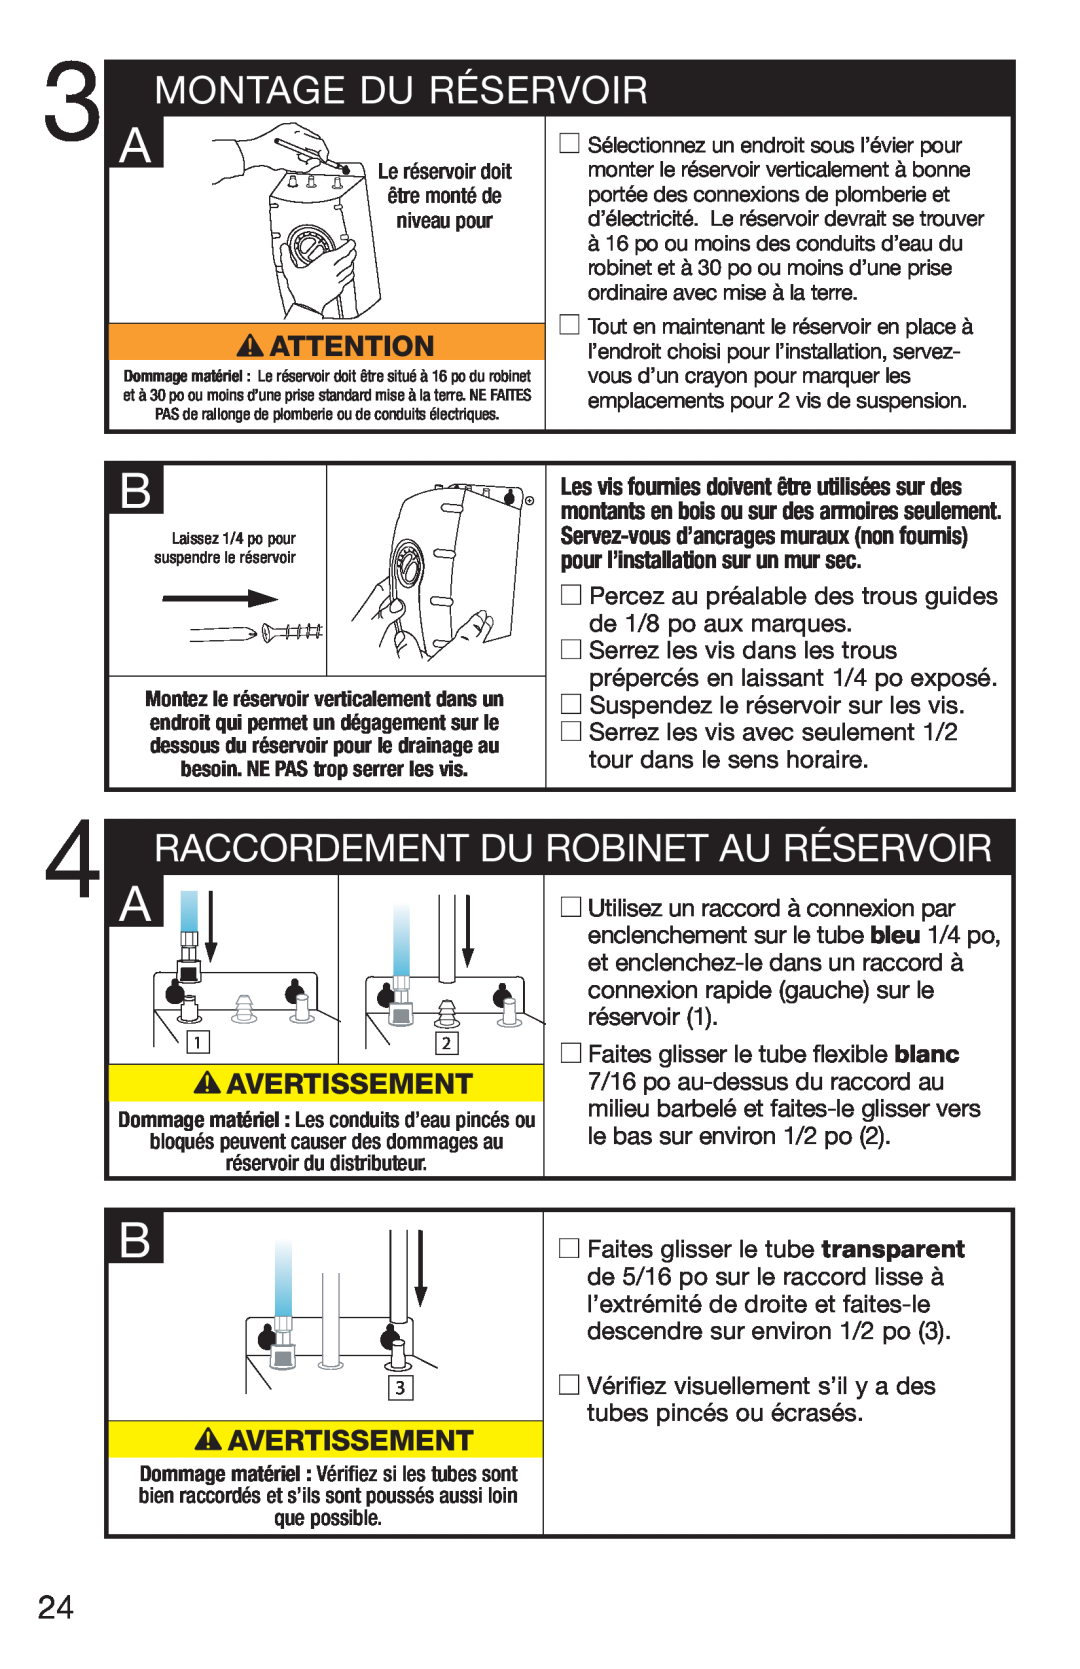 InSinkErator C1300, H778 owner manual Montage Du Réservoir, Raccordement Du Robinet Au Réservoir, Avertissement 